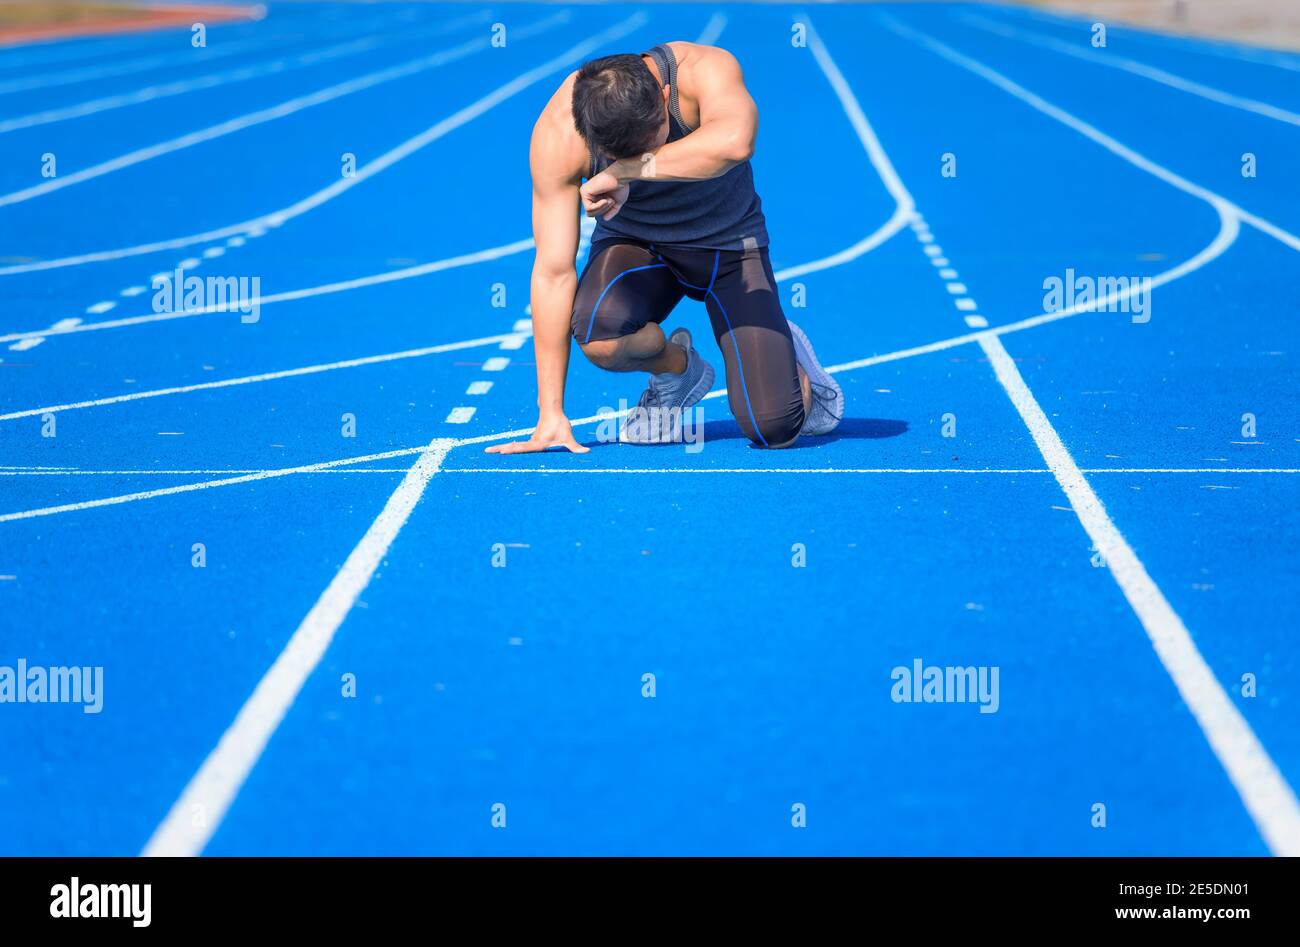 Müde Sportmann erschöpft Atmung nach dem Laufen und Training  Stockfotografie - Alamy